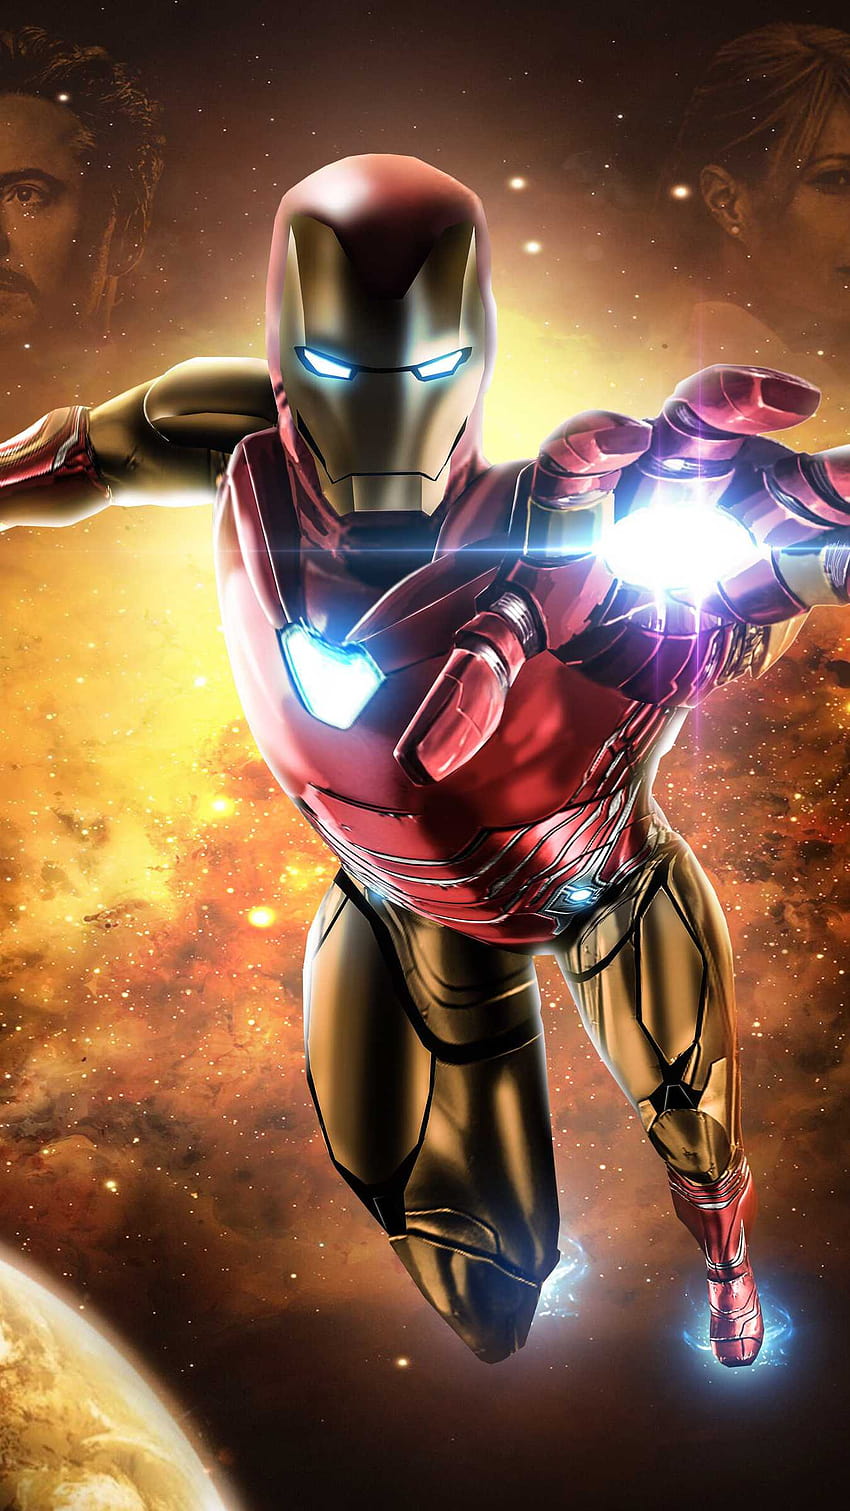 Marvel AVENGERS Endgame ~ IRON MAN ~ 6” Figure In Team Time Travel Suit |  eBay